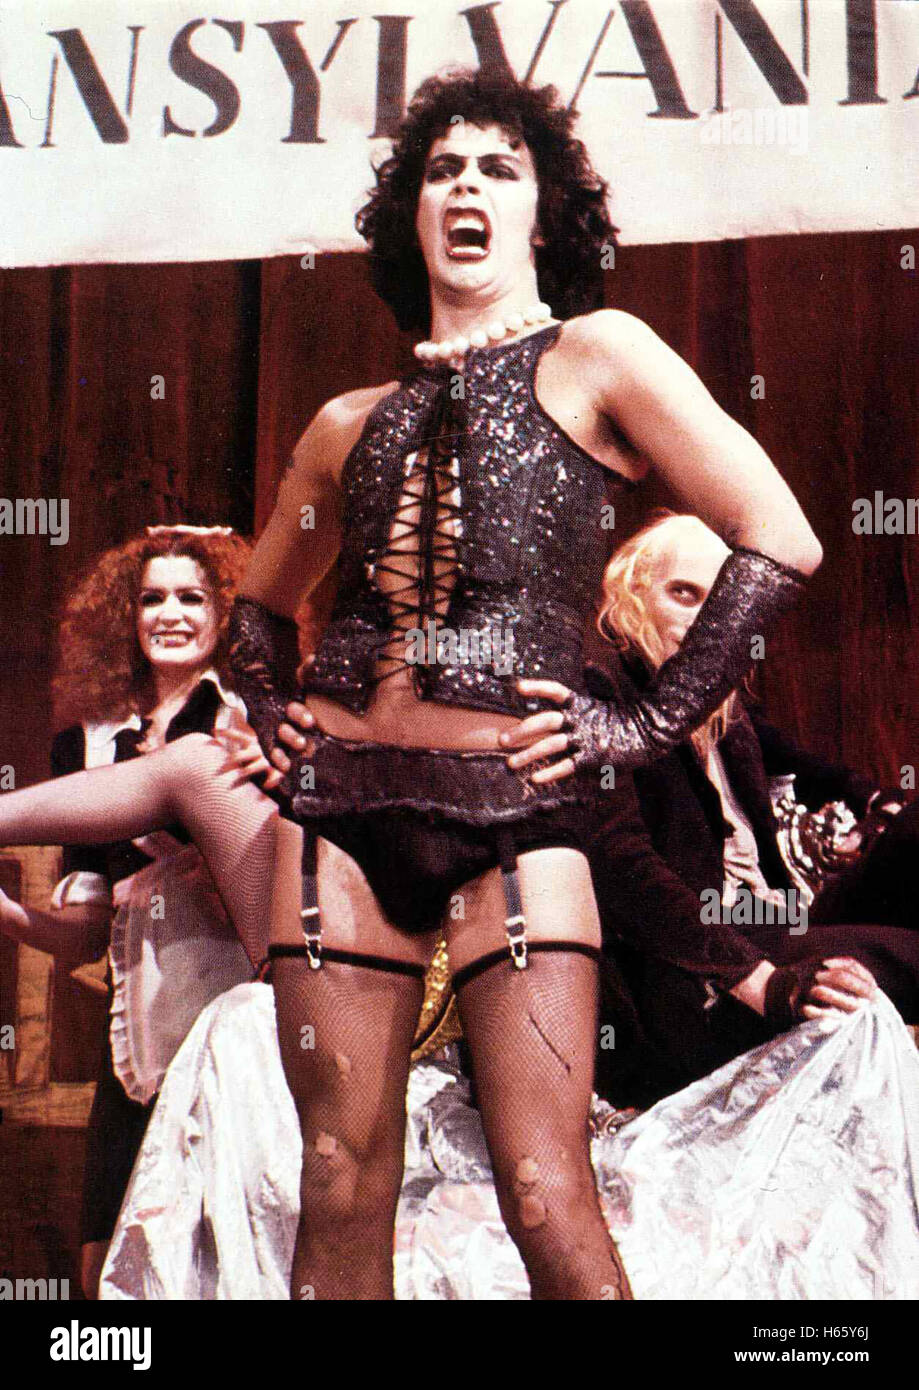 The Rocky Horror Picture Show, Großbritannien/USA 1975, Regie: Jim Sharman, Darsteller: Stock Photo